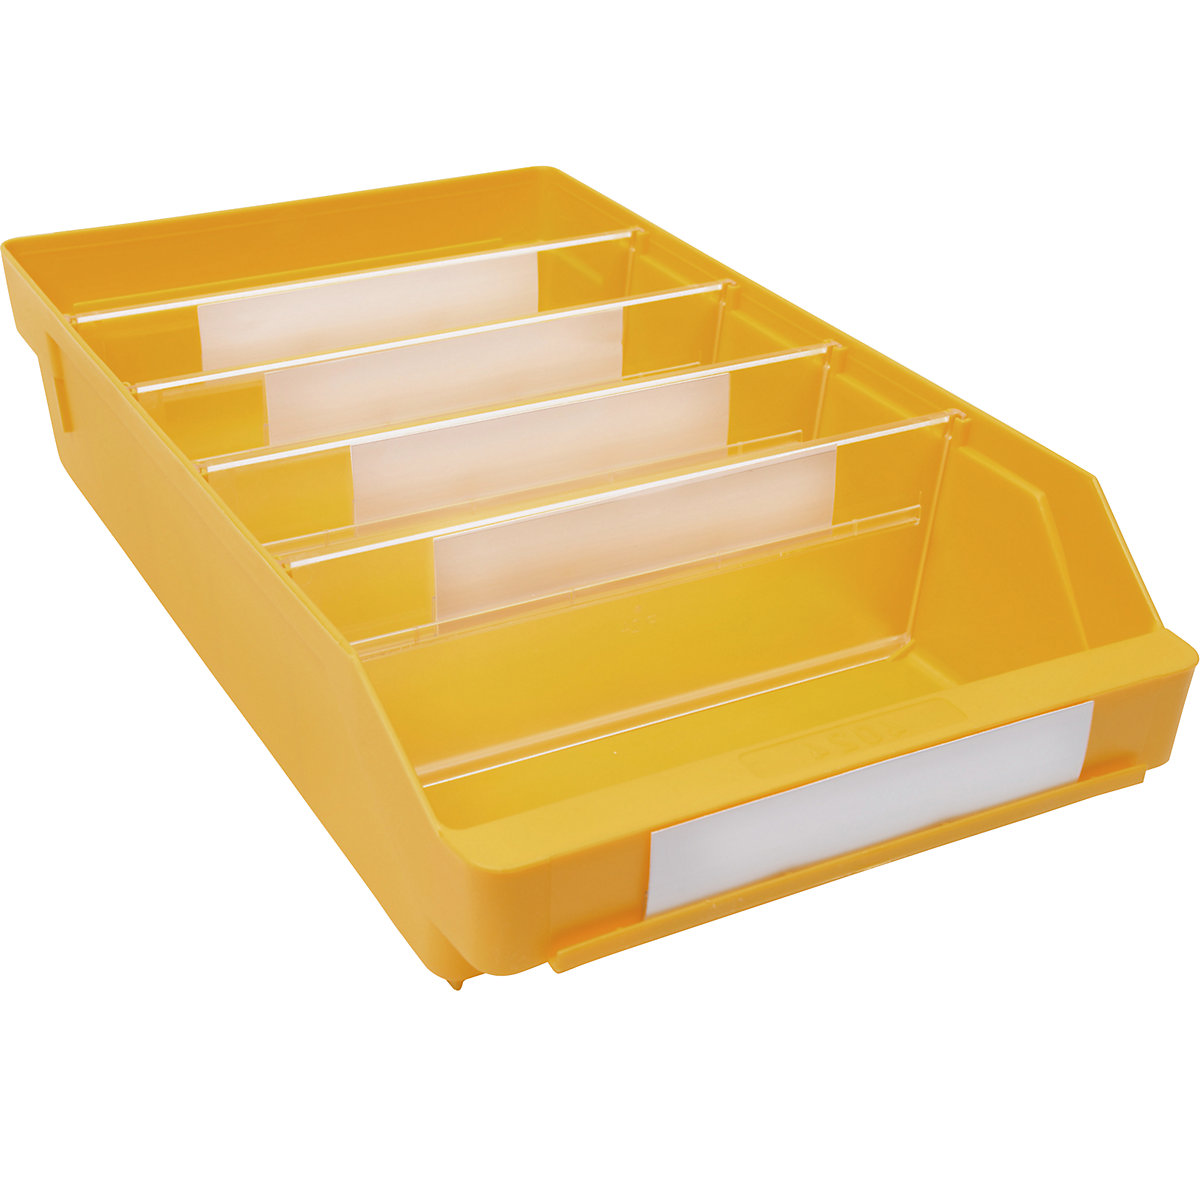 Cassettina per scaffali in polipropilene ad alta resistenza – STEMO, giallo, lungh. x largh. x alt. 400 x 240 x 95 mm, conf. da 15 pezzi-13